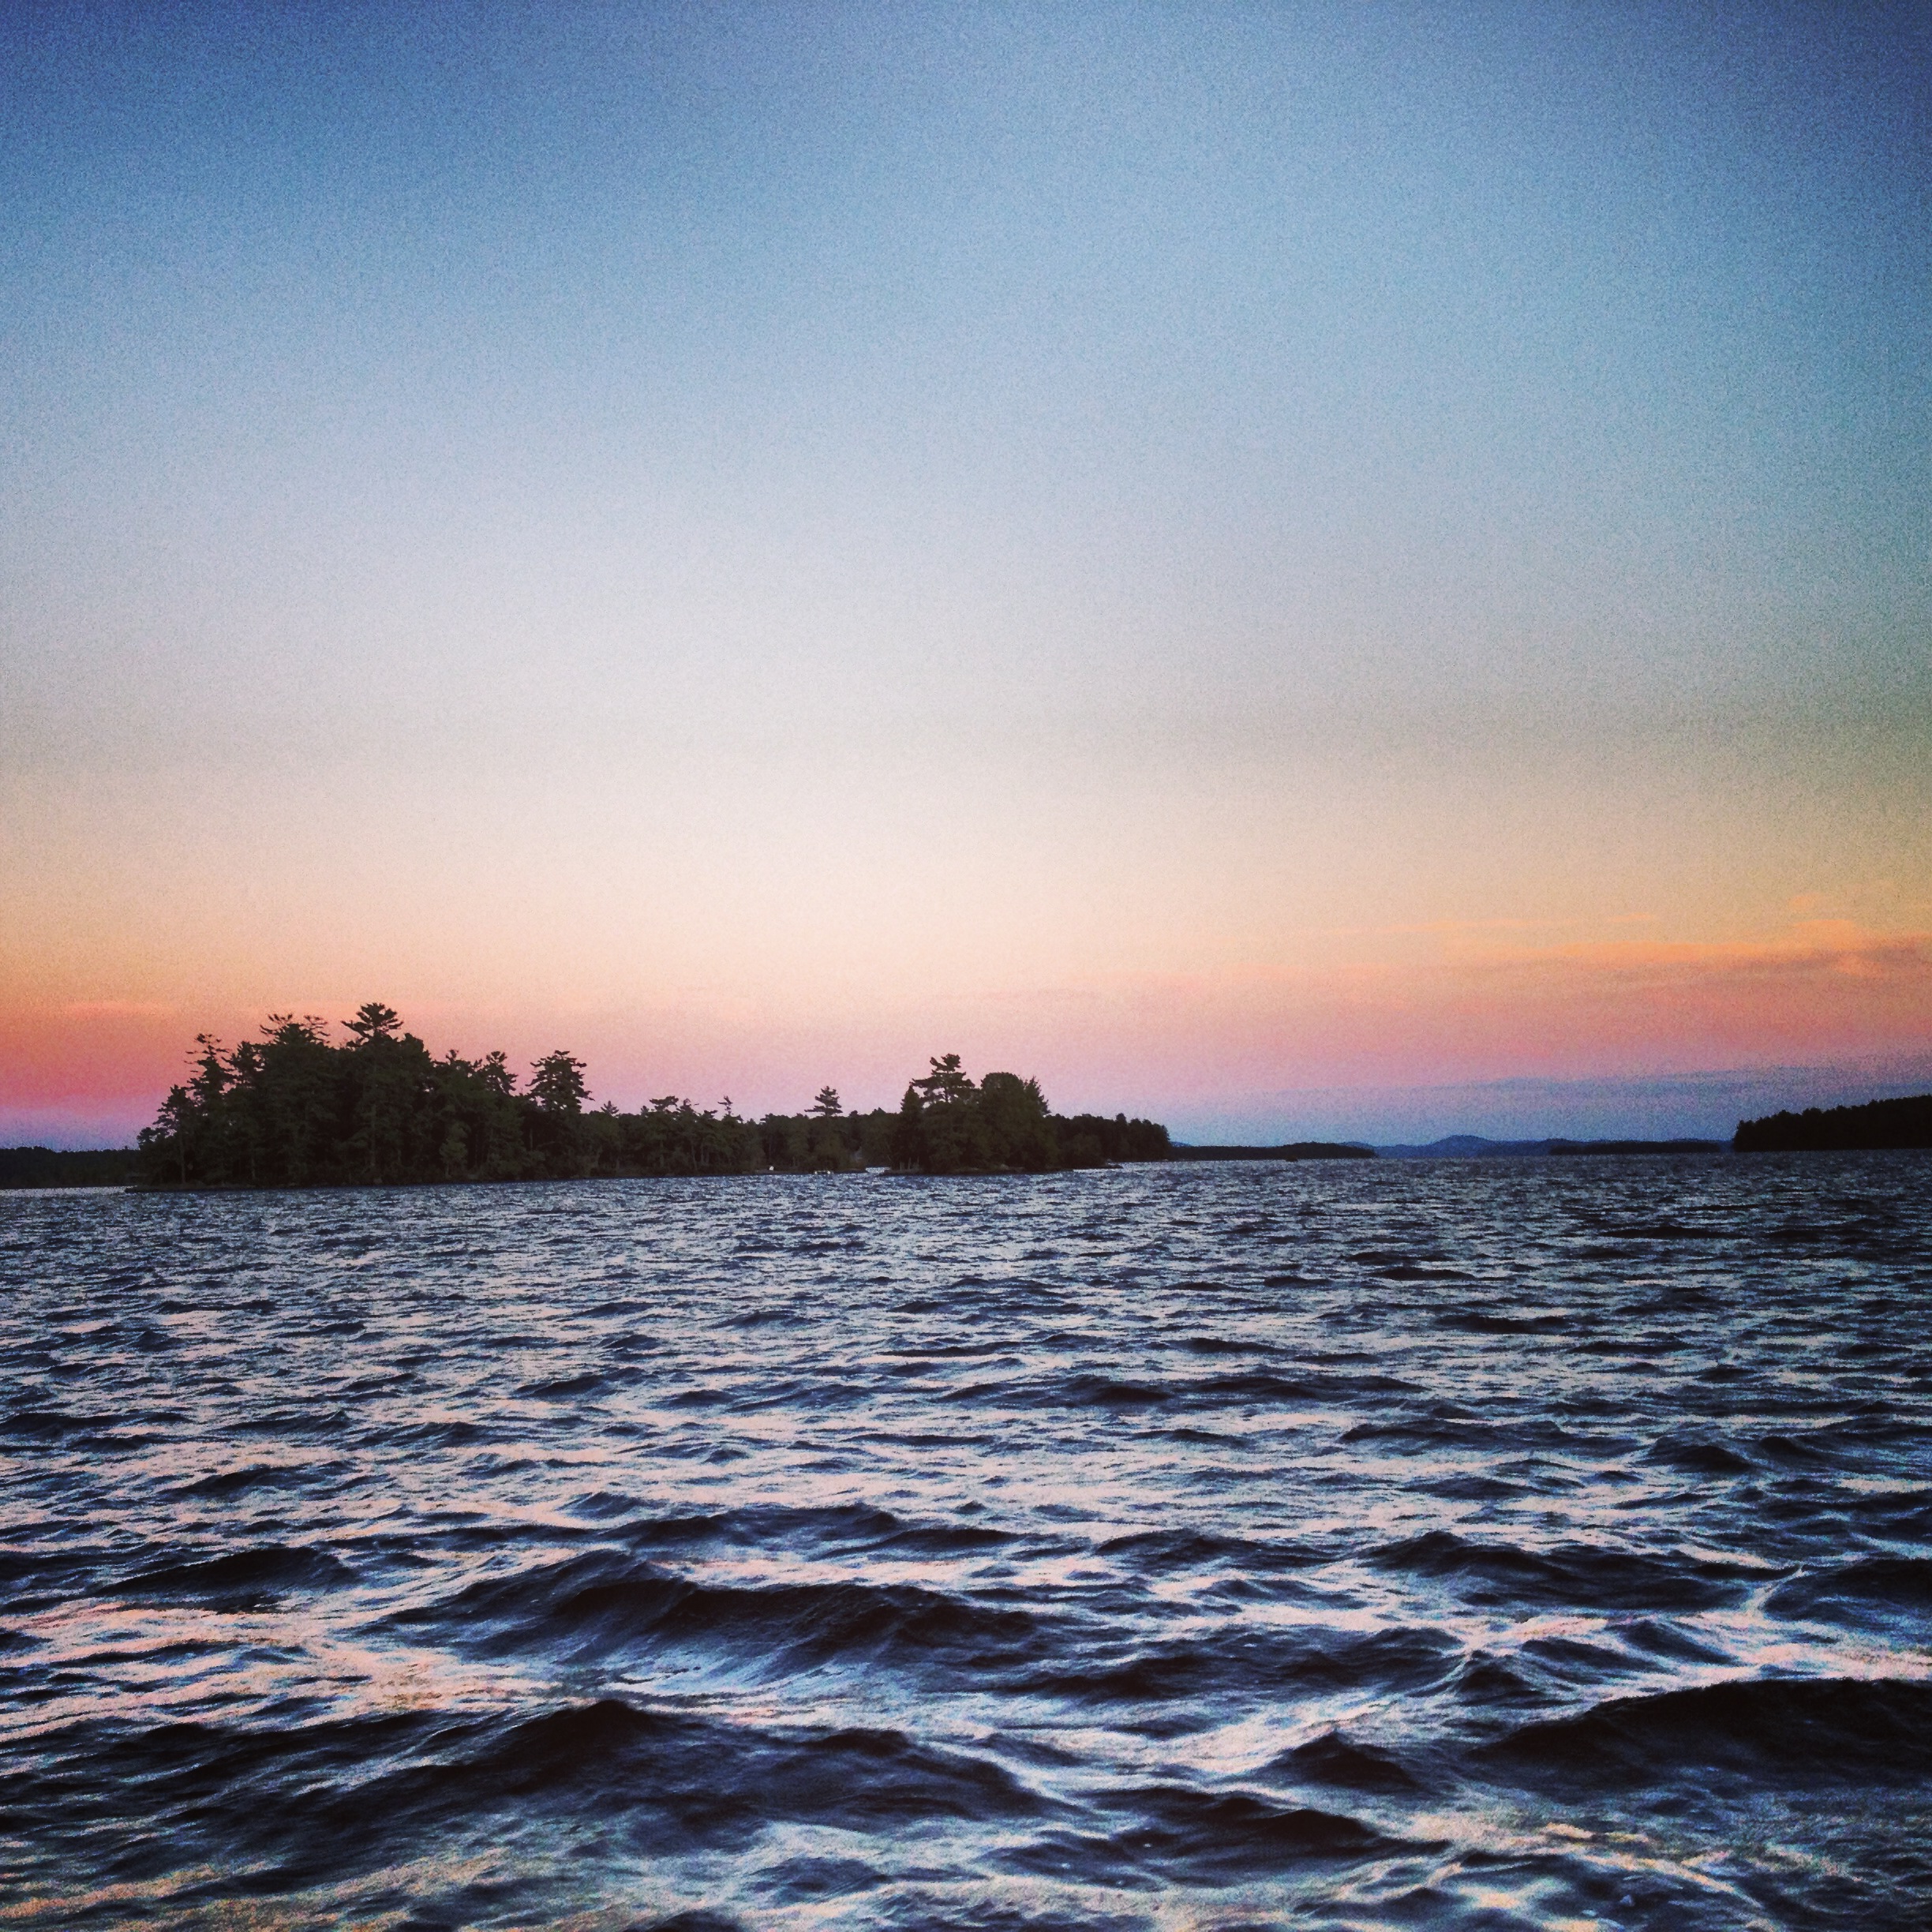 Lake sunset. New Hampshire.